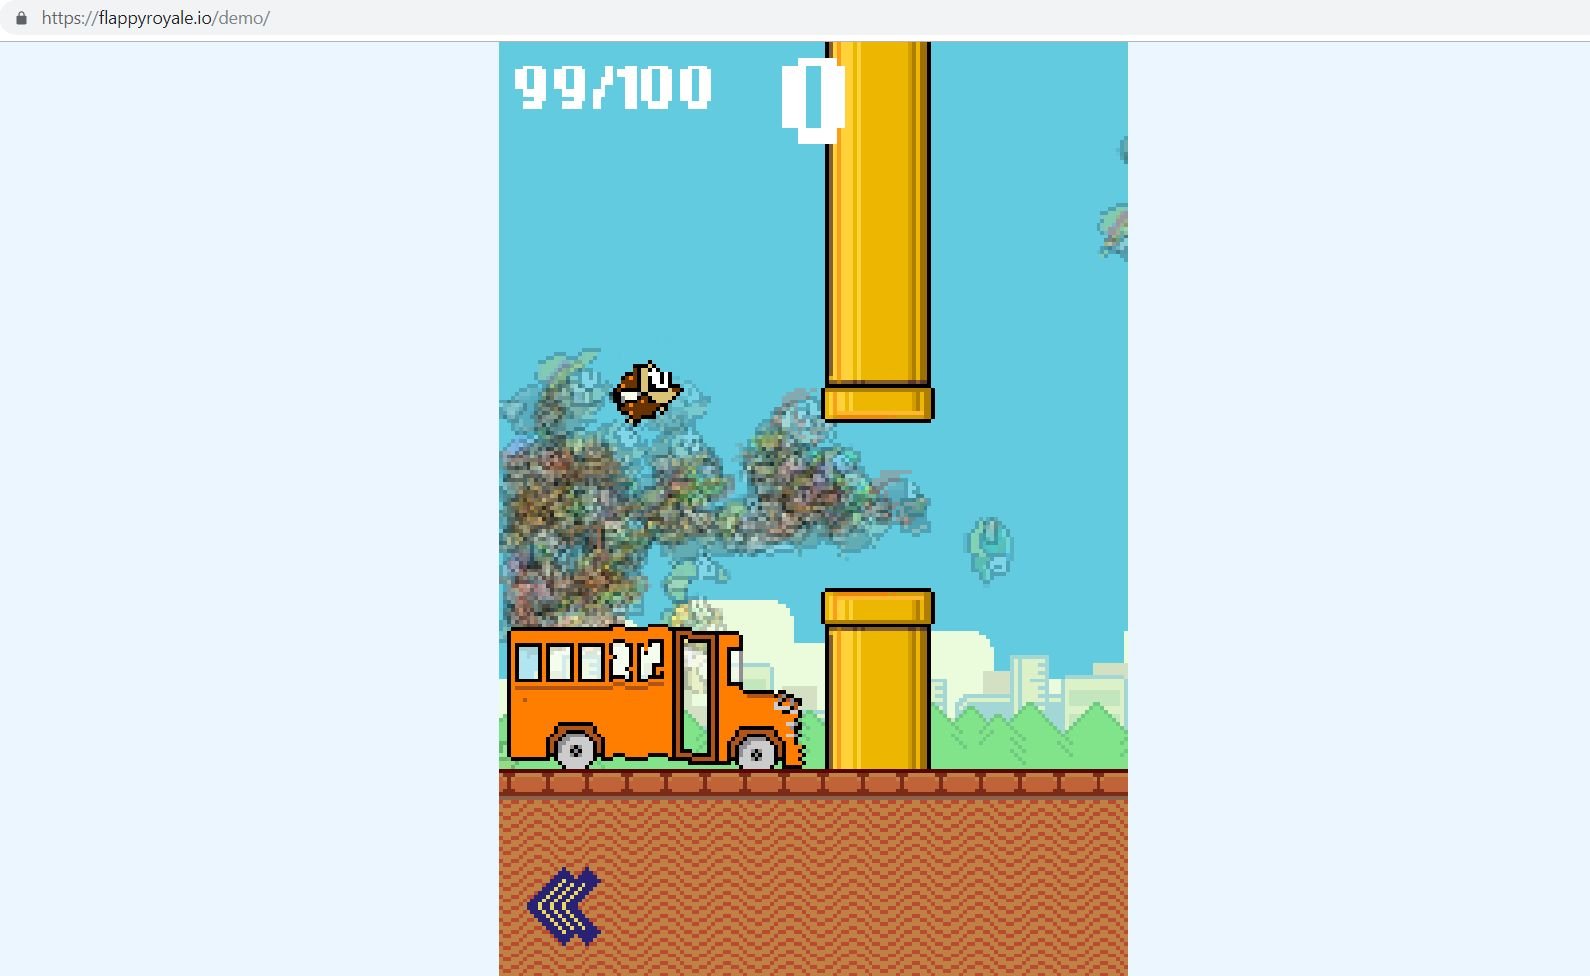 Flappy Birds sa vracia, svoje schopnosti si môžeš vyskúšať v Battle royale verzii hry